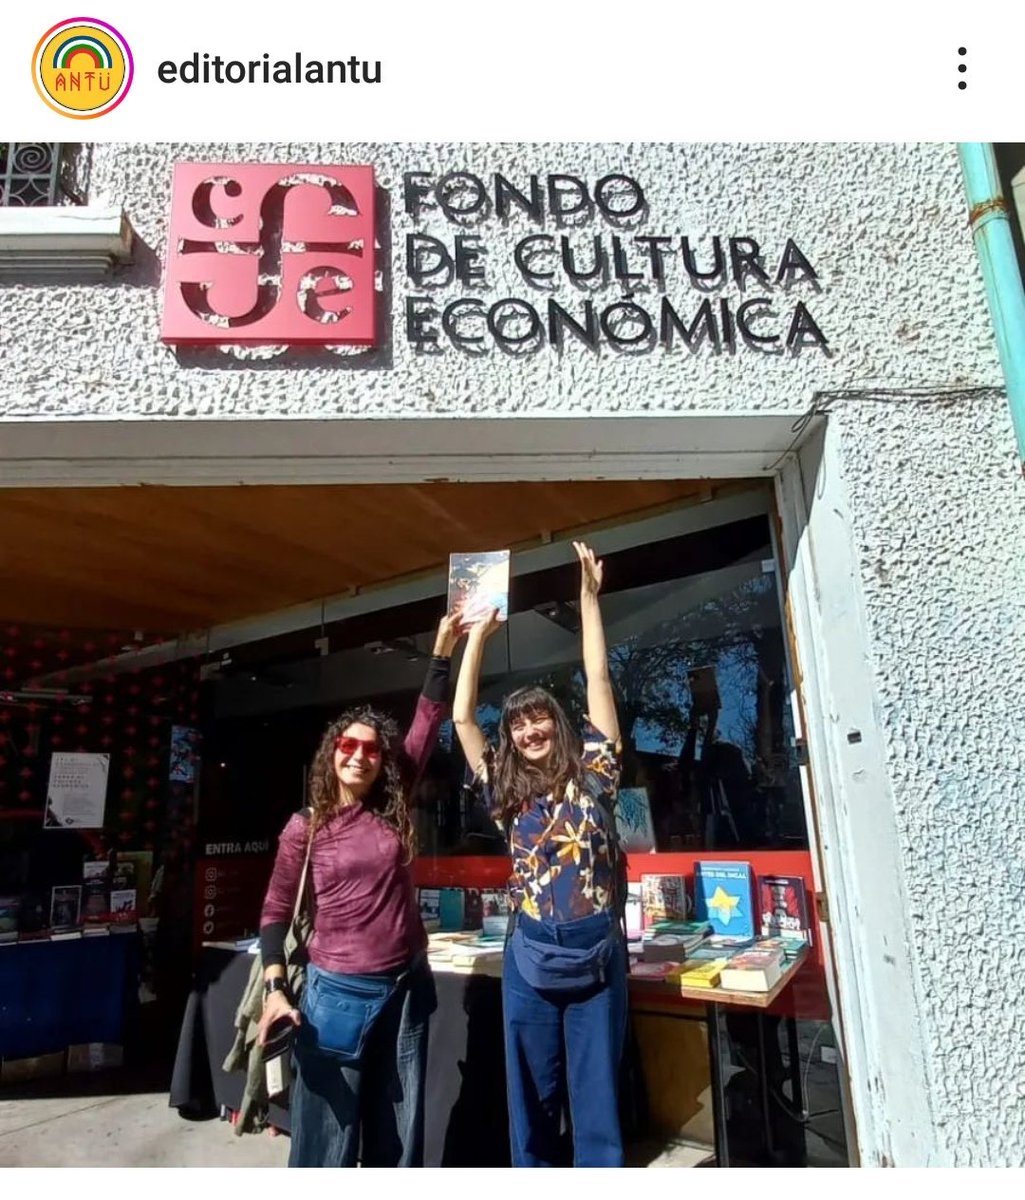 Ahora ya en #valparaiso #libreria #fondodeculturaeconomica